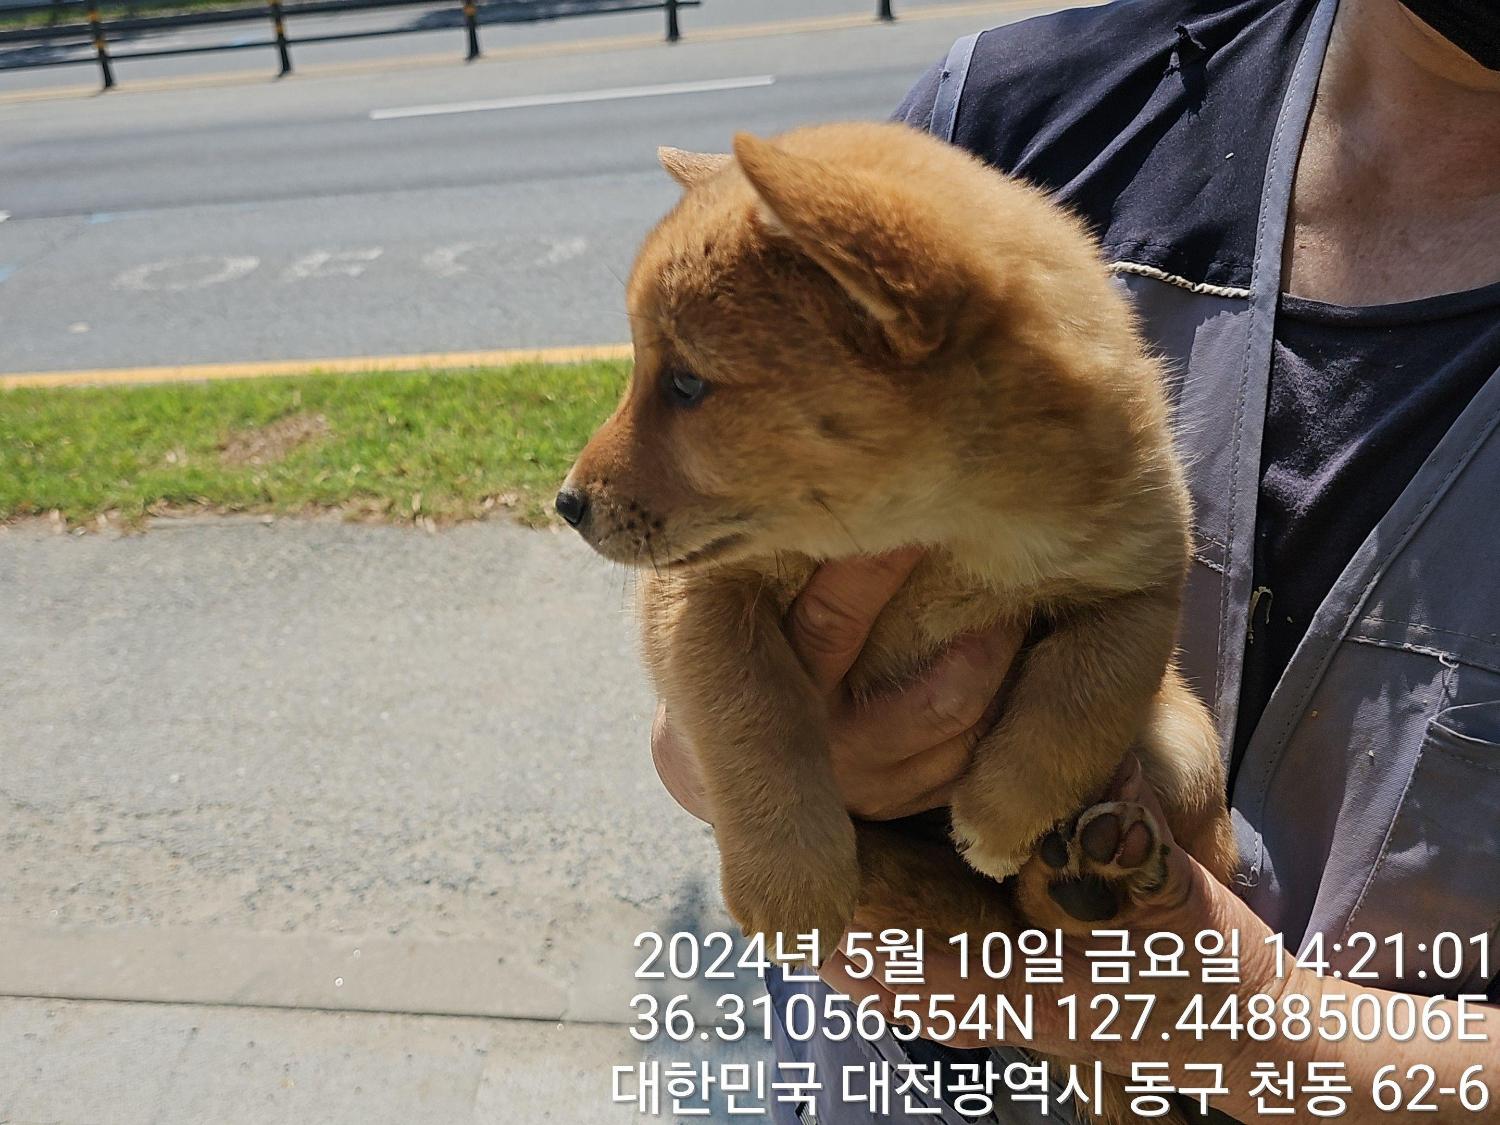 공고 번호가 대전-동구-2024-00124인 믹스견 동물 사진  